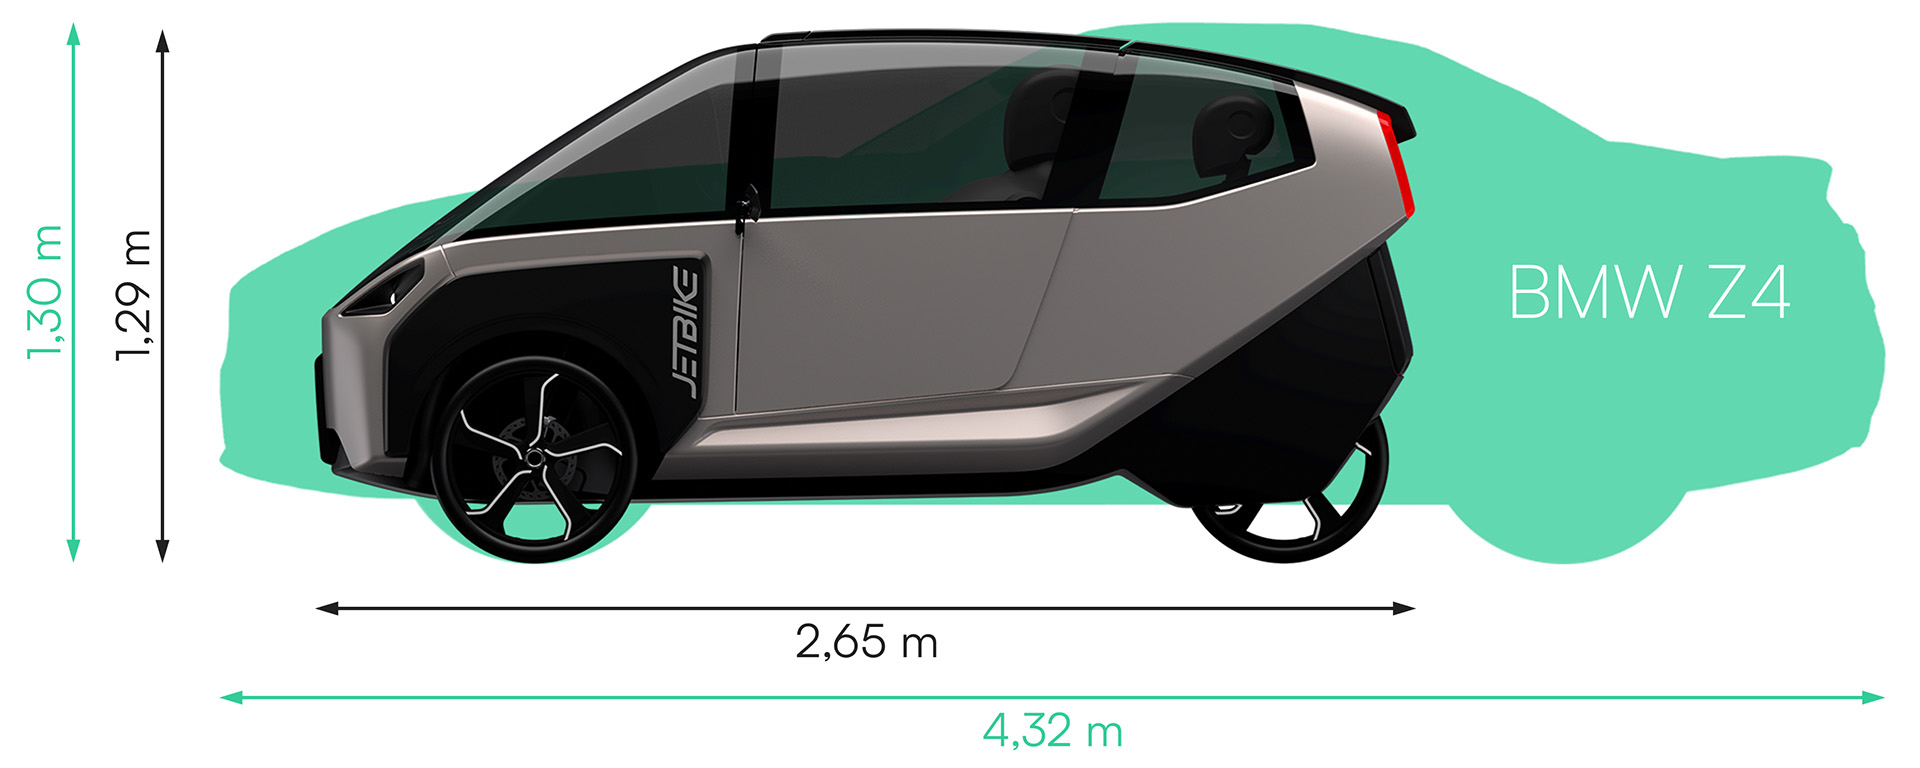 Jetbike - kompakte Abmessungen für geringen Platzverbrauch und entspannte Parkplatzsuche bei gleichzeitig hoher Sichtbarkeit im Straßenverkehr